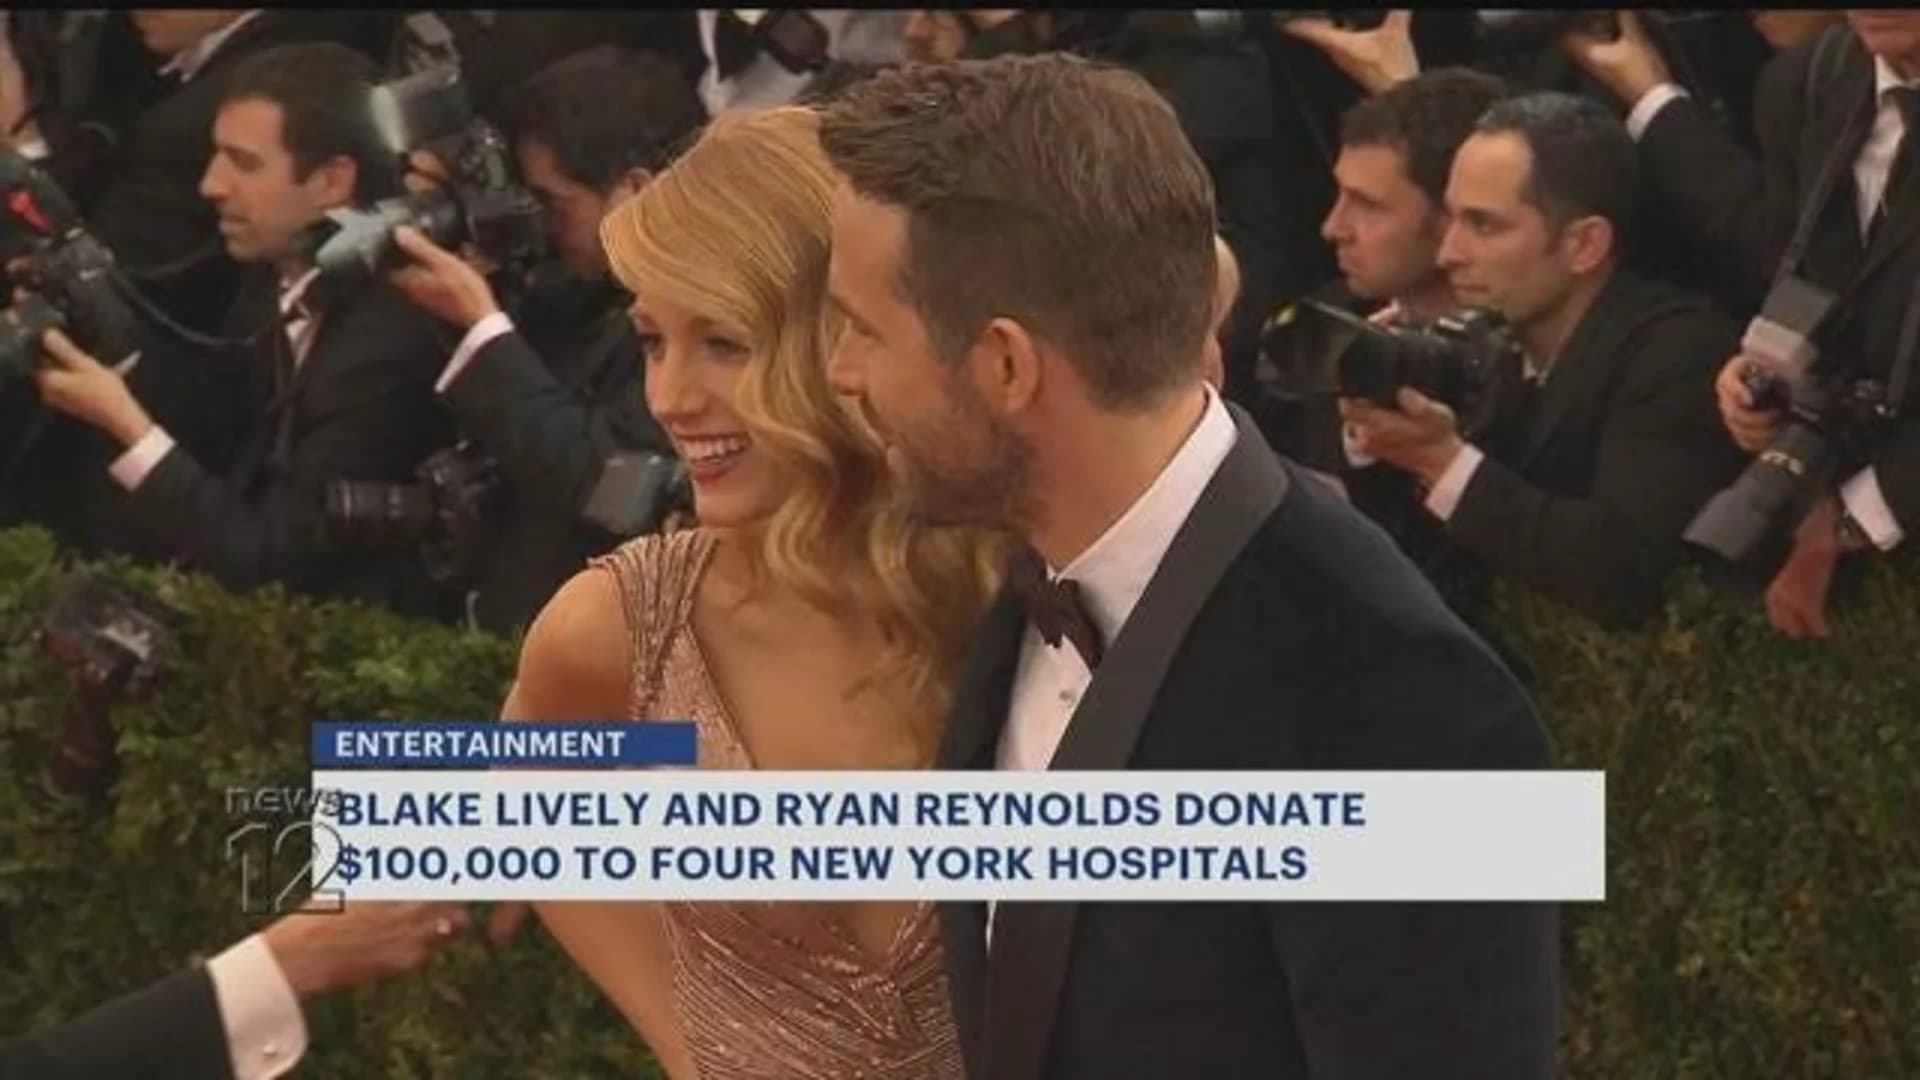 Blake Lively, Ryan Reynolds donate $400,000 to New York hospitals